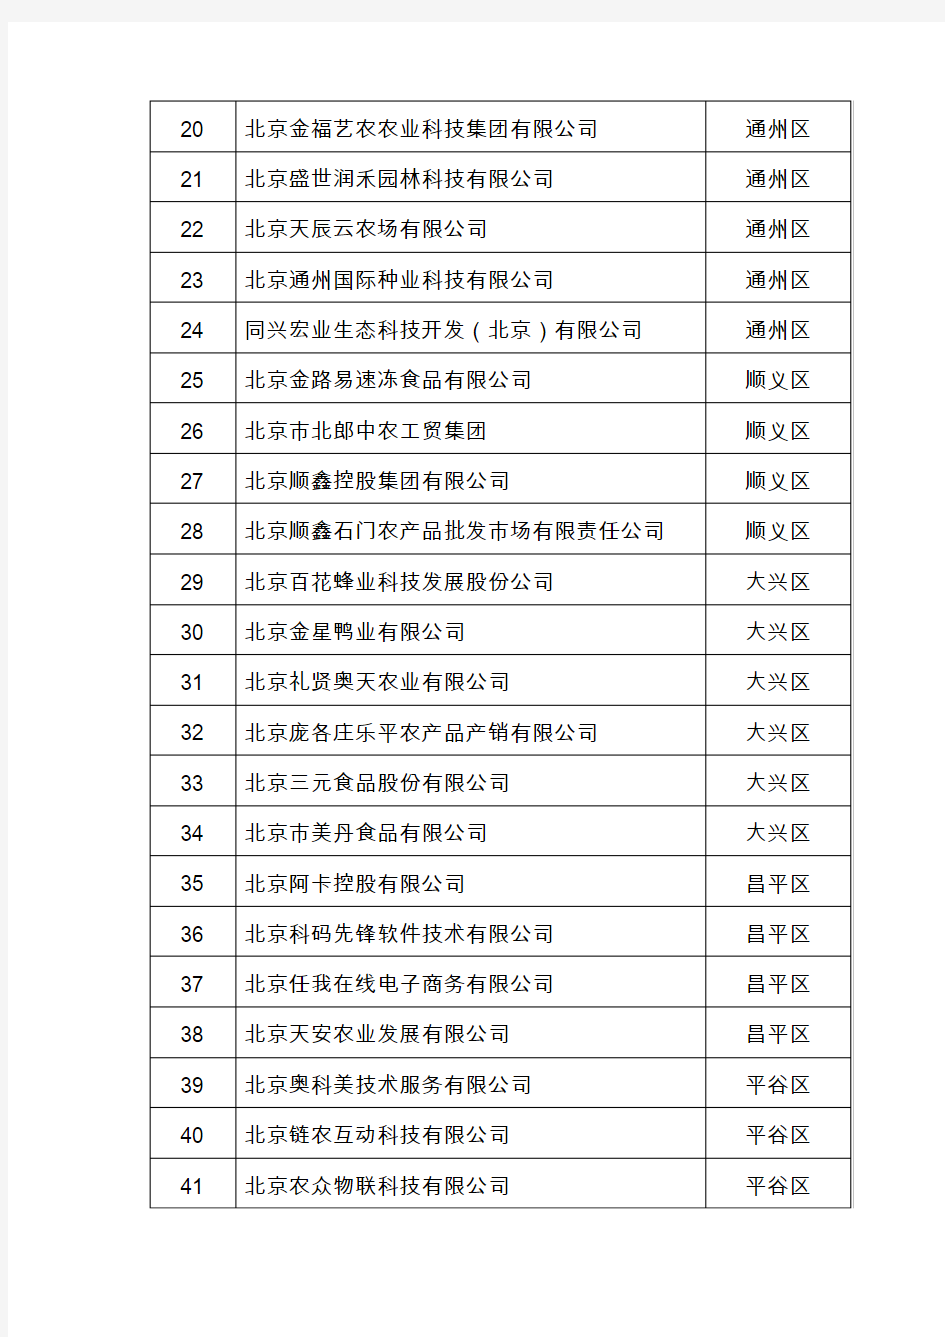 《北京市农业信息化龙头企业名单doc》